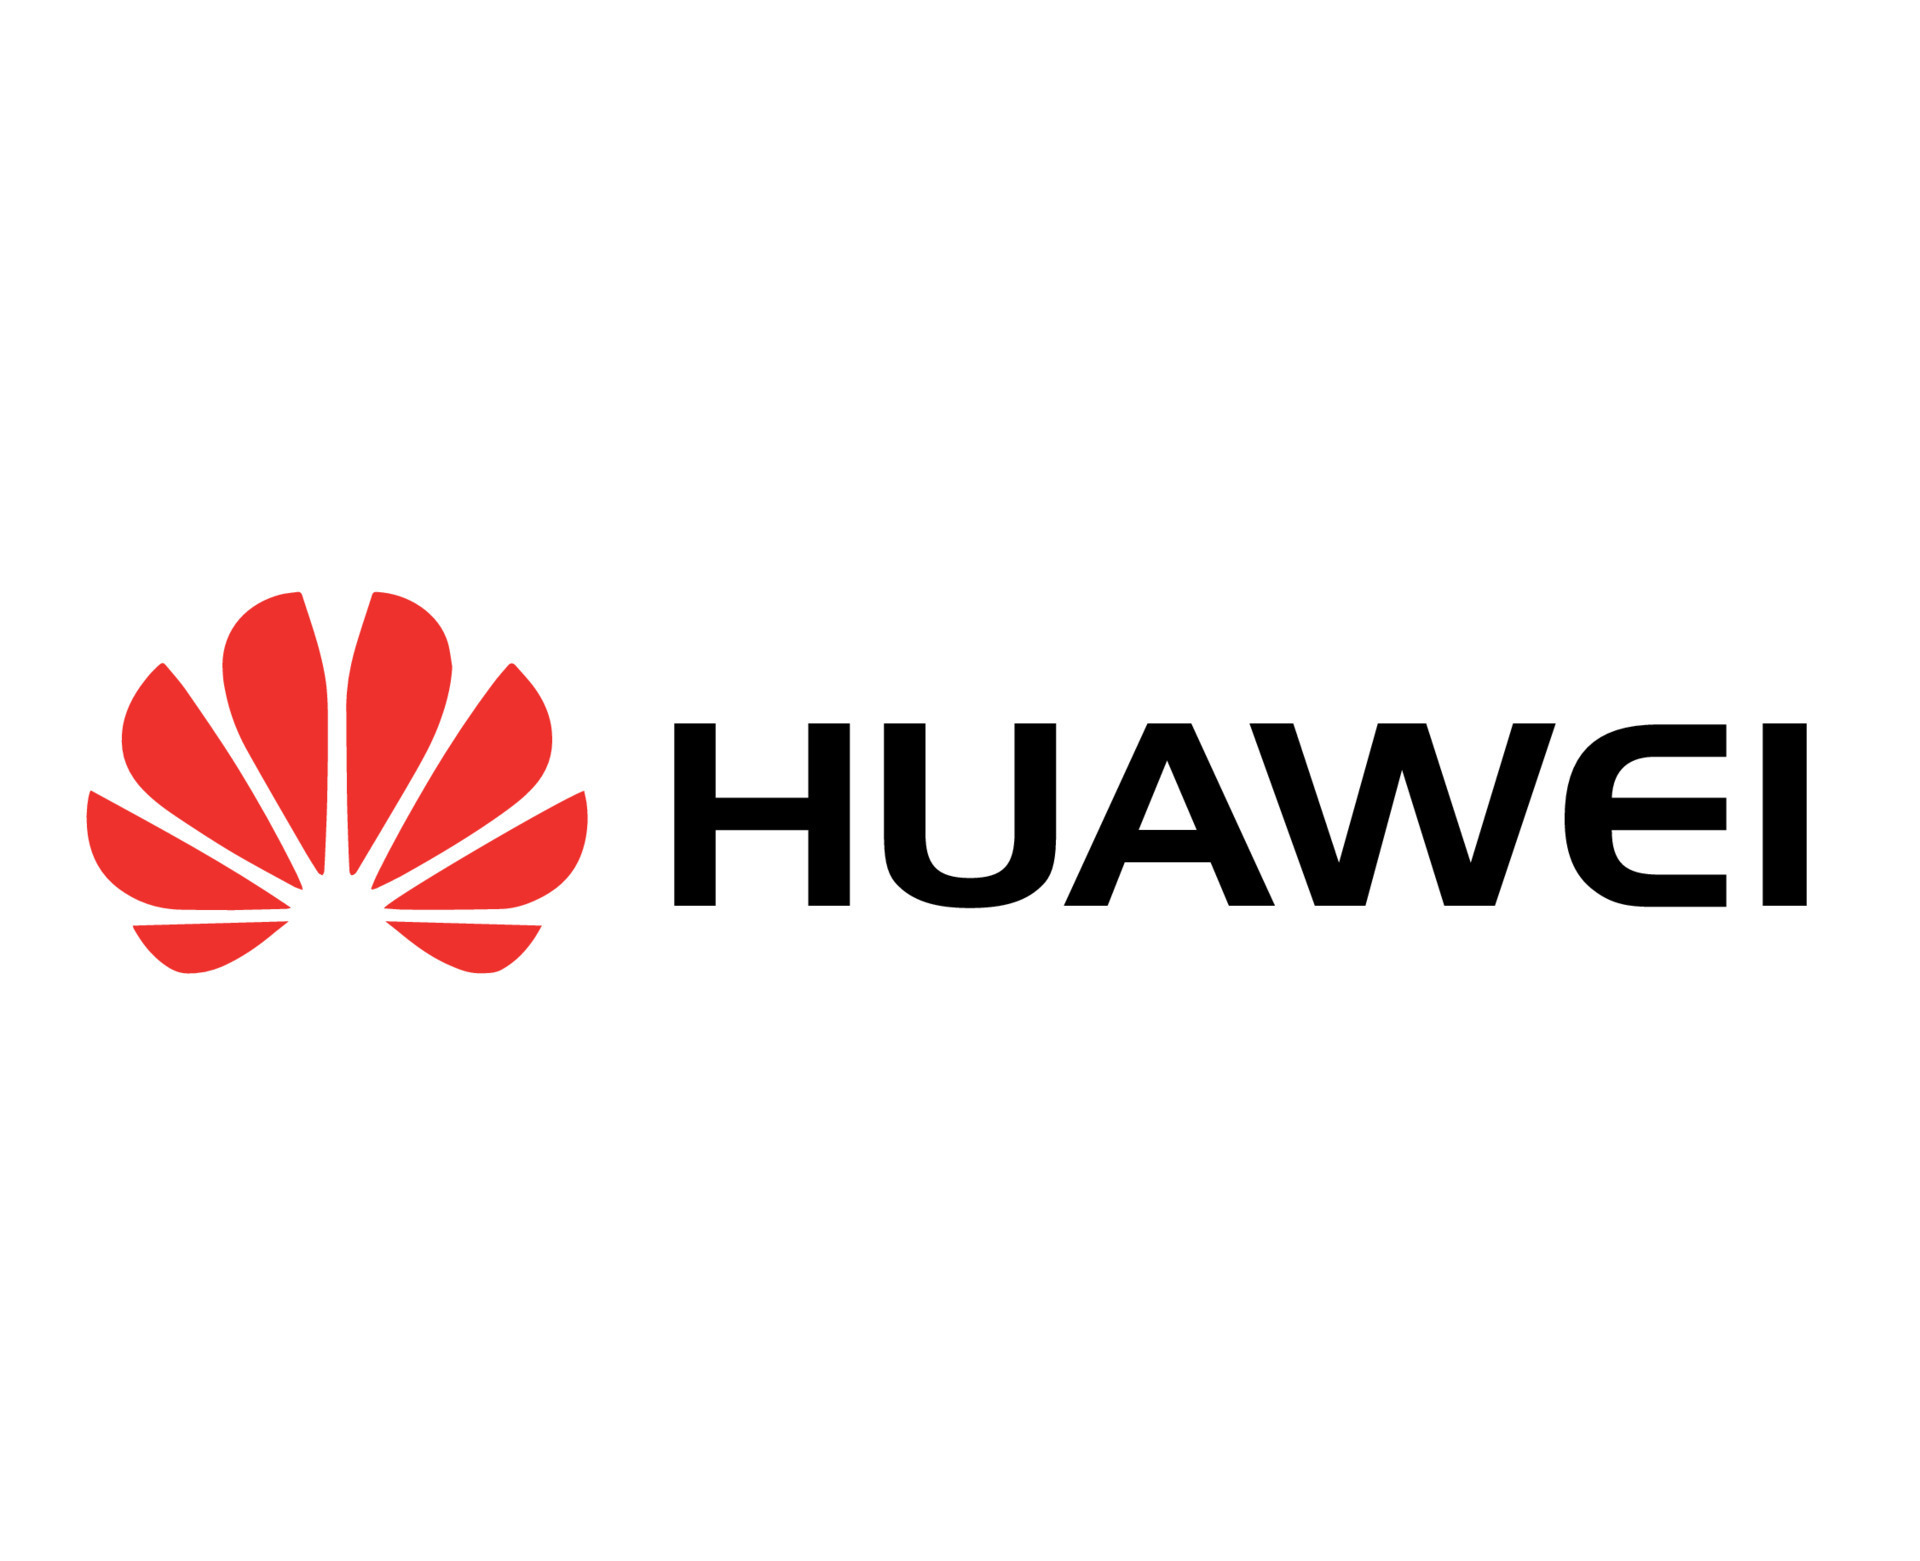 A marca chinesa Huawei pode chegar com mais um lançamento inédito! Venha conferir qual será. Você já conhece os aparelhos da marca chinesa Huawei? Apesar de ainda não estar entre as mais populares no Brasil, ela promete se destacar e proporcionar muitos produtos de qualidade. Ano passado (2023) a empresa lançou o Mate 60, que fez grande sucesso no exterior, e esse ano ela promete ainda mais. A seguir, iremos te apresentar o que mais de lançamento pode estar por vir por parte da marca chinesa Huawei. Então, vamos conferir? Segue o fio! Huawei: marca chinesa pode chegar com mais um lançamento inédito! De fato, a marca Huawei está se preparando para surpreender o mercado com uma série de novidades emocionantes que estão prestes a chegar às lojas. Entre elas, iremos destacar para você o tão aguardado modelo de dispositivo com tela tri-dobrável. Isso mesmo! E ele vem prometendo revolucionar a experiência do usuário. Também há rumores de que o Vision Pro, que é o headset de realidade mista da empresa, também será anunciado em breve, juntamente com os novos integrantes da linha P70 de aparelhos celulares. O que tem se falado nas redes sociais chinesas sobre o assunto Na rede social chinesa Weibo, as informações que estão circulando indicam que o lançamento do dispositivo dobrável está próximo, com expectativas de que seja equipado com telas fabricadas pela BOE, nada menos do que uma renomada empresa do setor. Qualidade e durabilidade do aparelho tri-dobrável Além disso, as dobradiças do modelo são produzidas pelas marcas Zhaoli e Fusda, garantindo qualidade e durabilidade ao produto final. A Huawei, seguindo seu compromisso com a excelência, já teria iniciado a aquisição em larga escala de materiais para a produção do aparelho, visando atender à demanda e superar as expectativas dos consumidores. Óculos de realidade mista Os óculos de realidade mista, que compartilham o mesmo nome do modelo da Apple, estão gerando bastante interesse entre os entusiastas da tecnologia. Já existem especulações de que esses óculos poderão ser equipados com um chip de última geração, projetado para proporcionar uma experiência imersiva superior, combinada com um desempenho excepcional. Cuidados e melhorias A marca chinesa ainda está concentrando esforços no sistema de refrigeração do dispositivo, reconhecendo que o calor gerado pode ser uma preocupação durante longos períodos de uso. Essa atenção aos detalhes demonstra o compromisso da empresa em oferecer produtos de alta qualidade e conforto para os usuários. No entanto, assim como ocorre com o modelo dobrável, as especificações técnicas exatas ainda não foram reveladas, deixando espaço para especulações e antecipação entre os consumidores. Modelo do aparelho - o que já sabemos Até o momento, o que temos são algumas ilustrações provenientes da patente registrada pela Huawei, oferecendo uma visão intrigante do que poderia ser o celular com tela tri-dobrável da empresa. As imagens sugerem um dispositivo composto por três telas que se dobram duas vezes, resultando em um design compacto, embora possa apresentar uma espessura considerável quando dobrado. Uma característica interessante revelada nas ilustrações é a configuração em formato de Z das dobras do celular, o que indica a possibilidade de utilizar o dispositivo com apenas dois de seus três displays disponíveis. Além disso, a diferença de espessura entre as telas sugere um esforço para reduzir o volume quando dobrado. Câmera Outro ponto destacado é a localização do módulo de câmeras na traseira do primeiro painel, com o segundo display apresentando uma região em baixo-relevo para acomodar os sensores fotográficos sem interferir no processo de dobra. No entanto, é importante ressaltar que as ilustrações da patente não revelam detalhes sobre as especificações técnicas do dispositivo, deixando espaço para especulações e curiosidade entre os consumidores. Afinal, está confirmado? Embora ainda não haja confirmação sobre o lançamento do produto, a frequência dos rumores sugere que a Huawei está preparando algo inovador para o mercado. Aguardemos por mais informações e novidades emocionantes da empresa para te informar em breve. Conclusão Para concluirmos, podemos dizer que as ilustrações da patente registrada pela Huawei revelam um potencial dispositivo com tela tri-dobrável, trazendo uma proposta inovadora para o mercado de aparelhos celulares. Embora as imagens ofereçam apenas uma visão preliminar do possível design, elas despertam o interesse dos consumidores em relação ao que a empresa pode estar planejando. E, mesmo que sem uma confirmação oficial sobre esse lançamento da marca chinesa, a frequência dos rumores sugere que a Huawei está explorando novas fronteiras tecnológicas e pode estar se preparando para apresentar algo único e emocionante aos consumidores. Você acredita em novidades ainda para este ano para a marca? Conta pra gente nos comentários e não deixe de acompanhar essa saga!